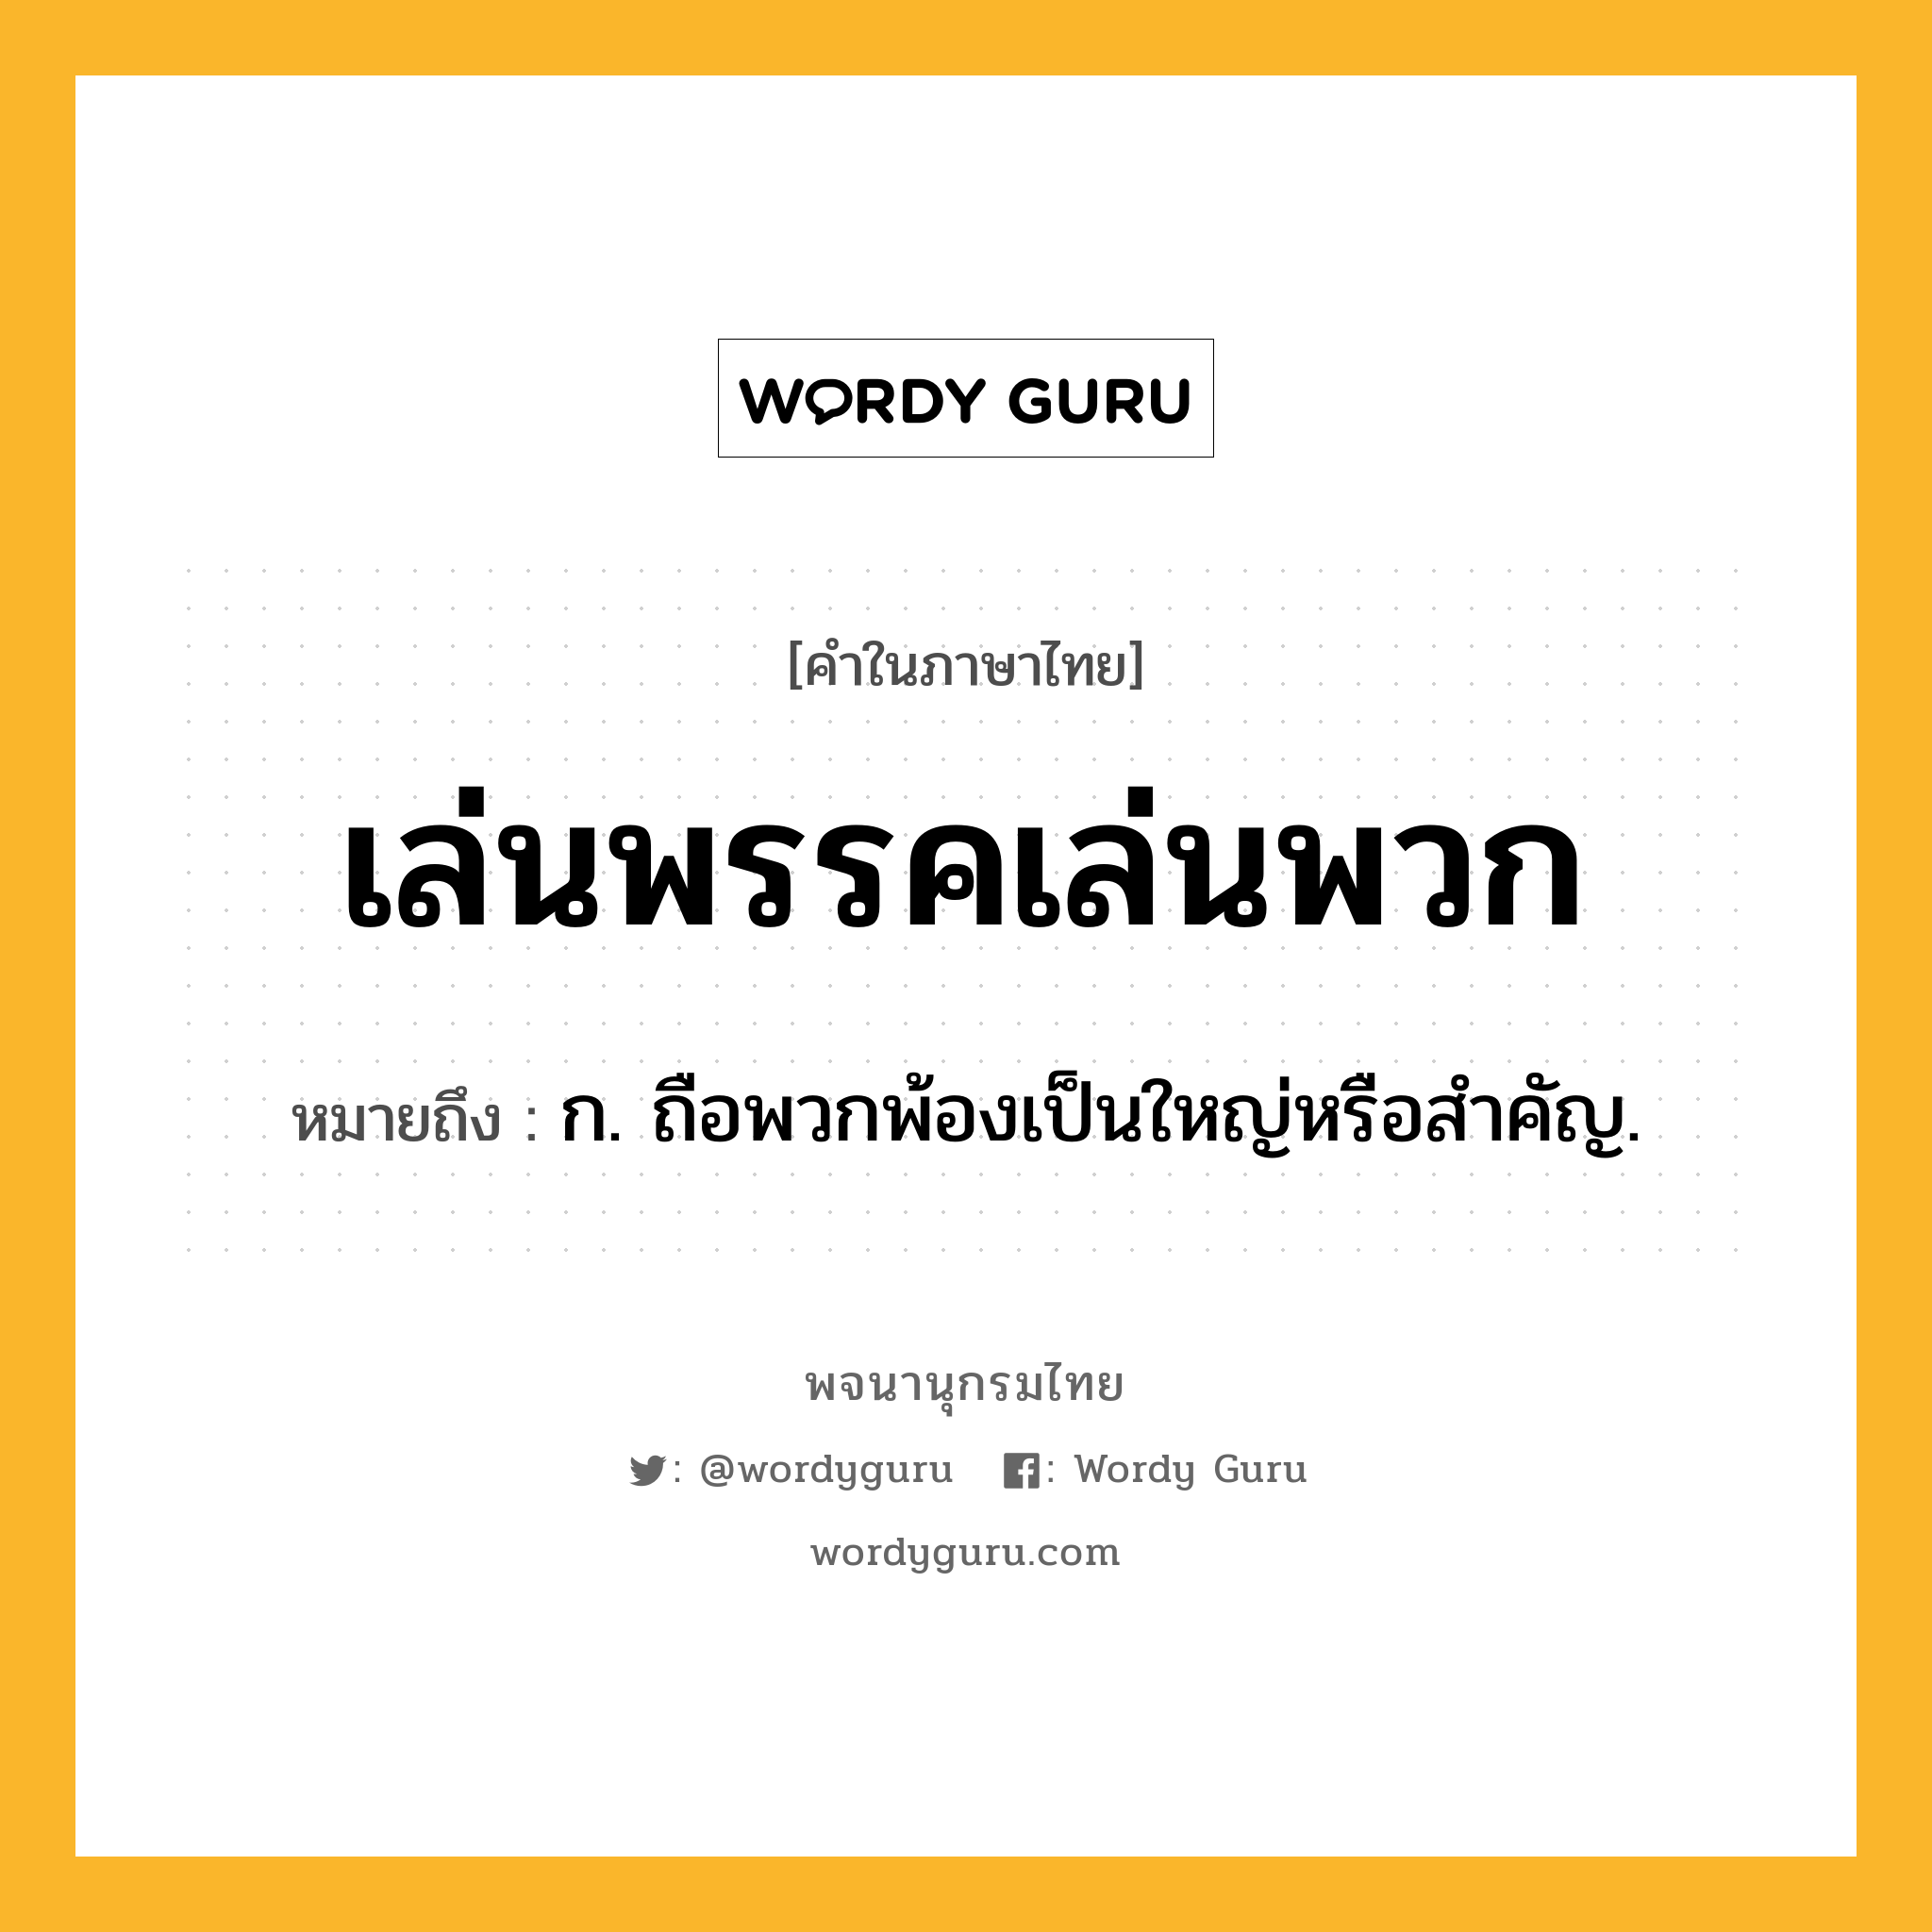 เล่นพรรคเล่นพวก ความหมาย หมายถึงอะไร?, คำในภาษาไทย เล่นพรรคเล่นพวก หมายถึง ก. ถือพวกพ้องเป็นใหญ่หรือสำคัญ.